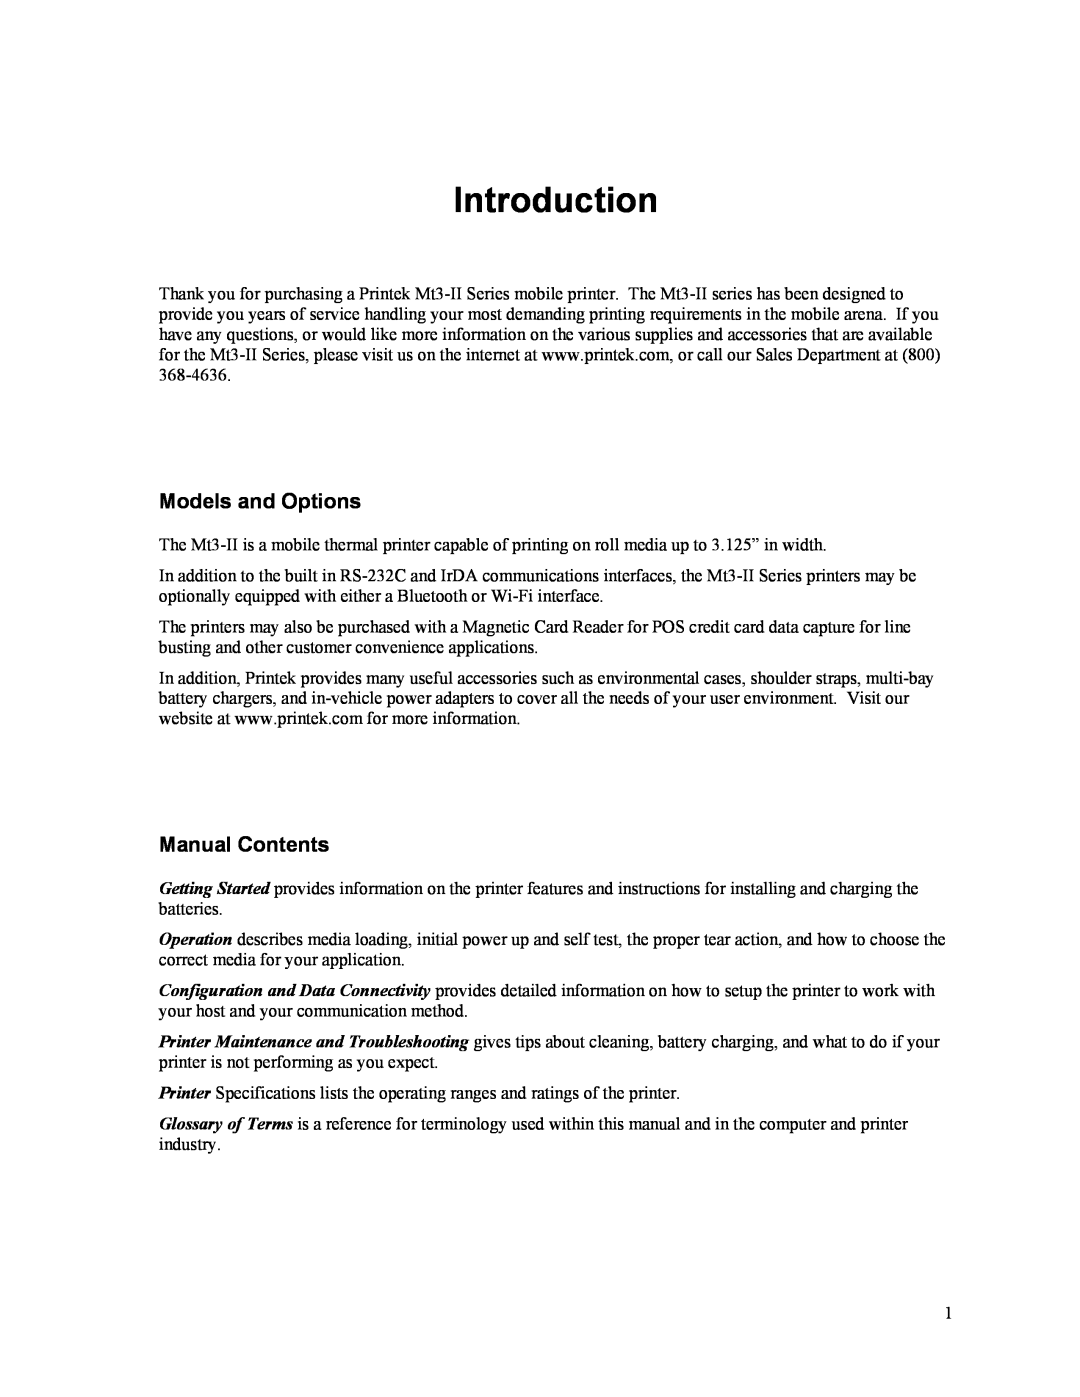 Printek Mt3-II manual Introduction, Models and Options, Manual Contents 